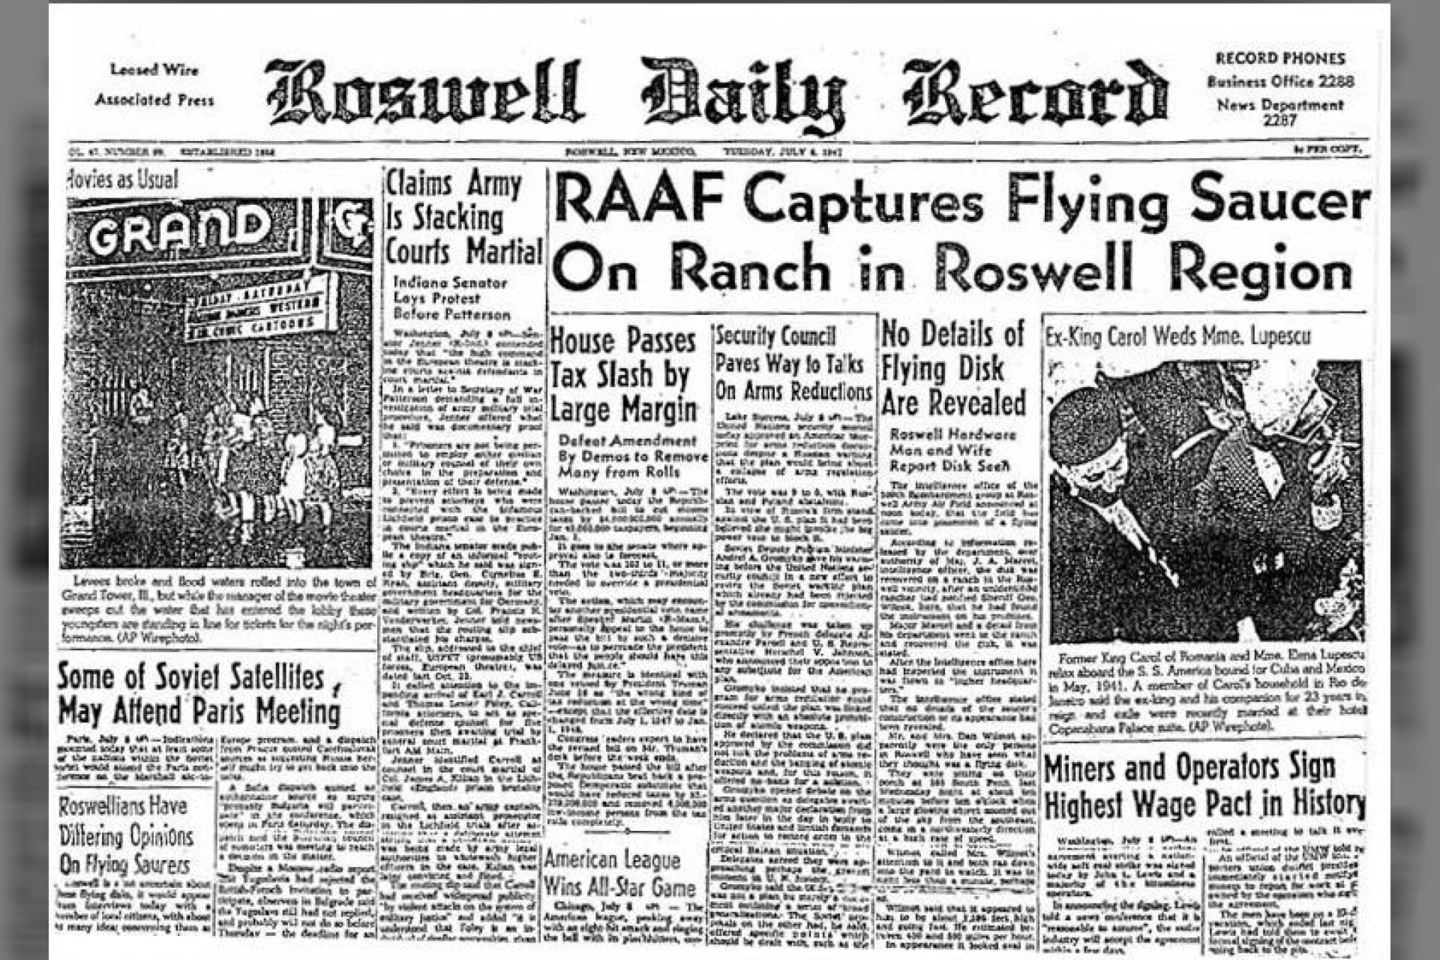  Kai kariškiai iš pradžių spaudai pranešė apie nuolaužas, objektą jie pavadino „skraidančiu disku“ - o tai paskatino spekuliacijas apie nežemišką kilmę.<br> Roswell Daily Record nuotr.